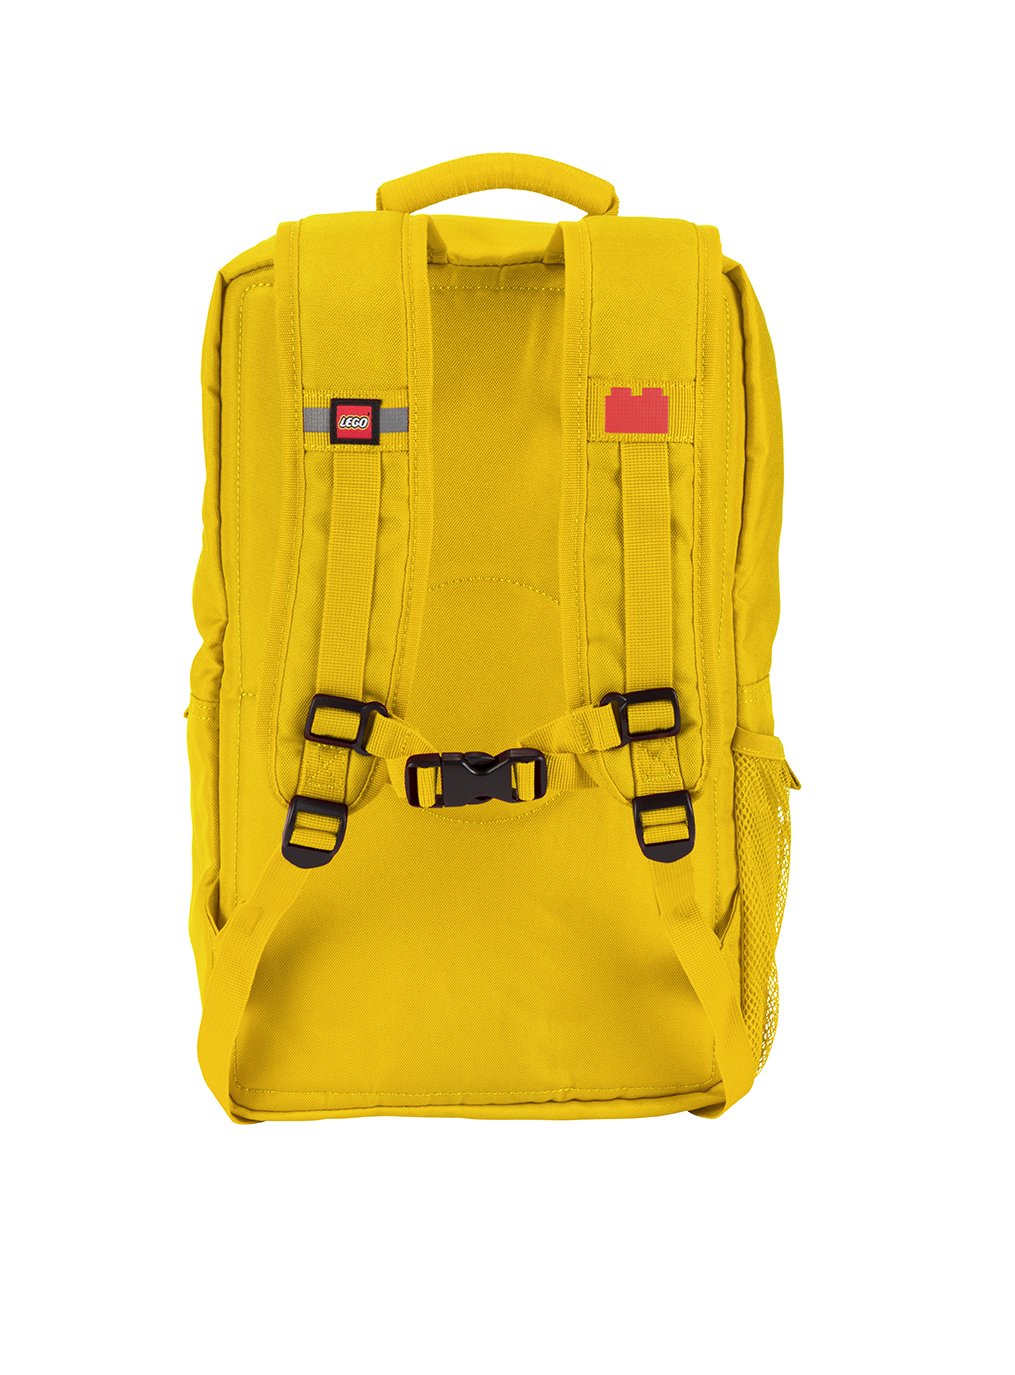 LEGO Brick Backpack, Yellow